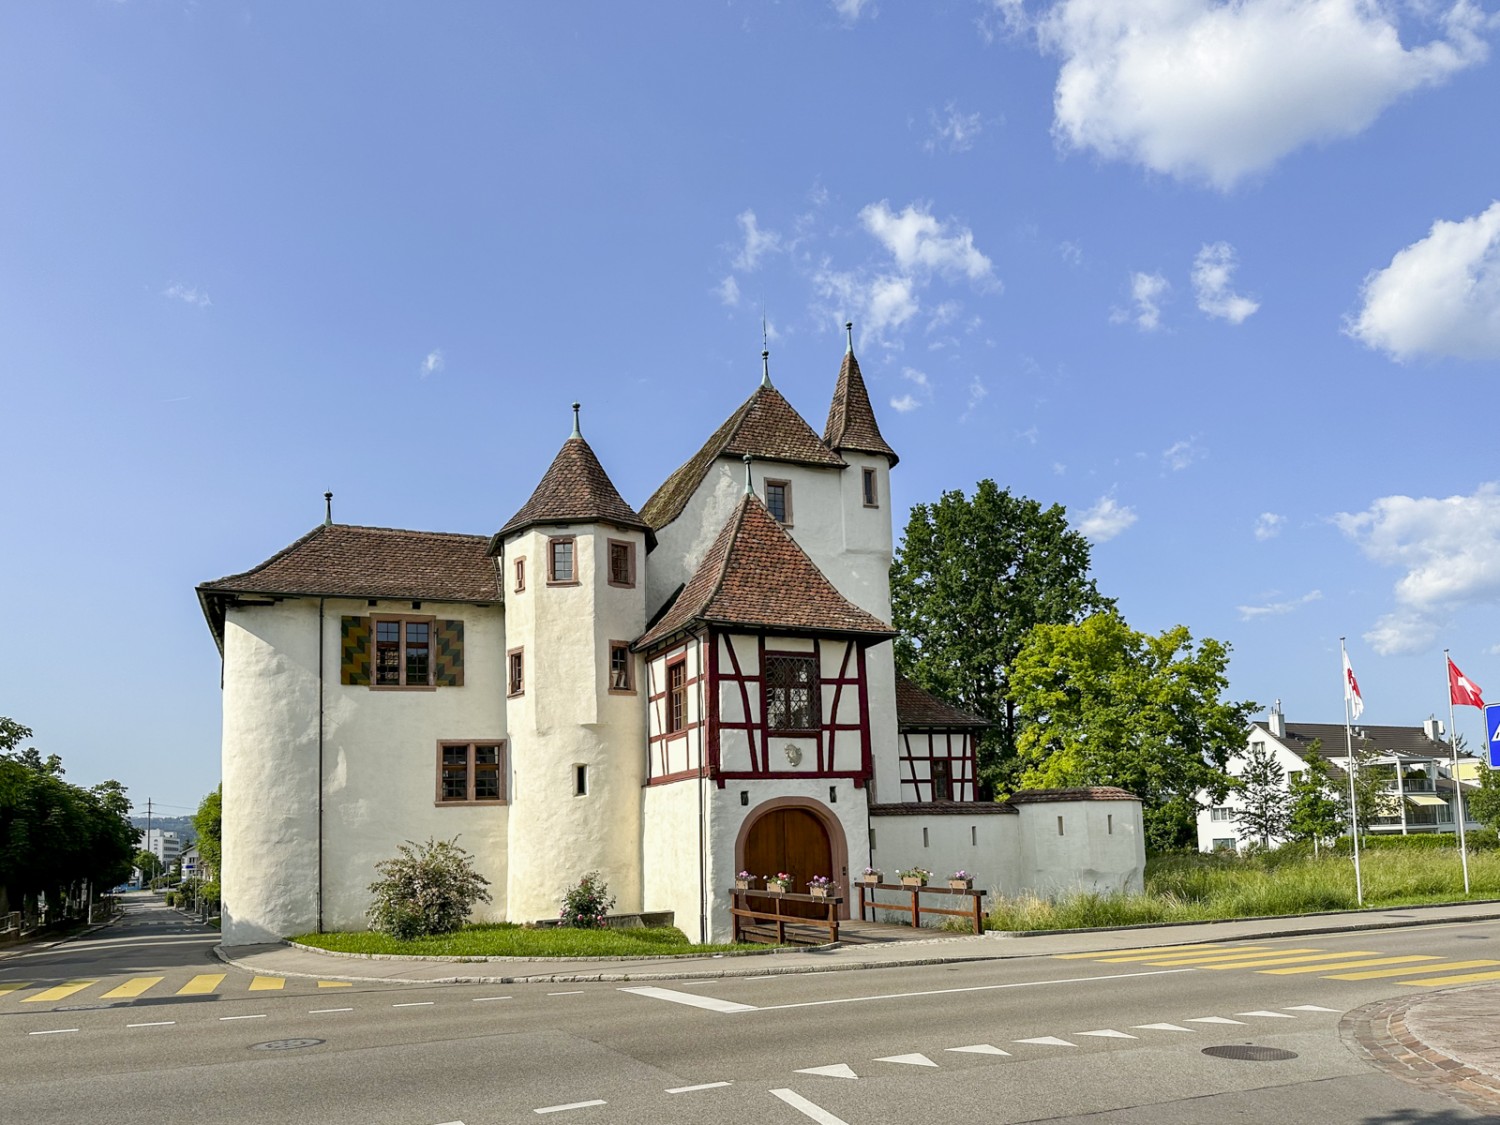 Le château de Pratteln est un ancien château à douves.